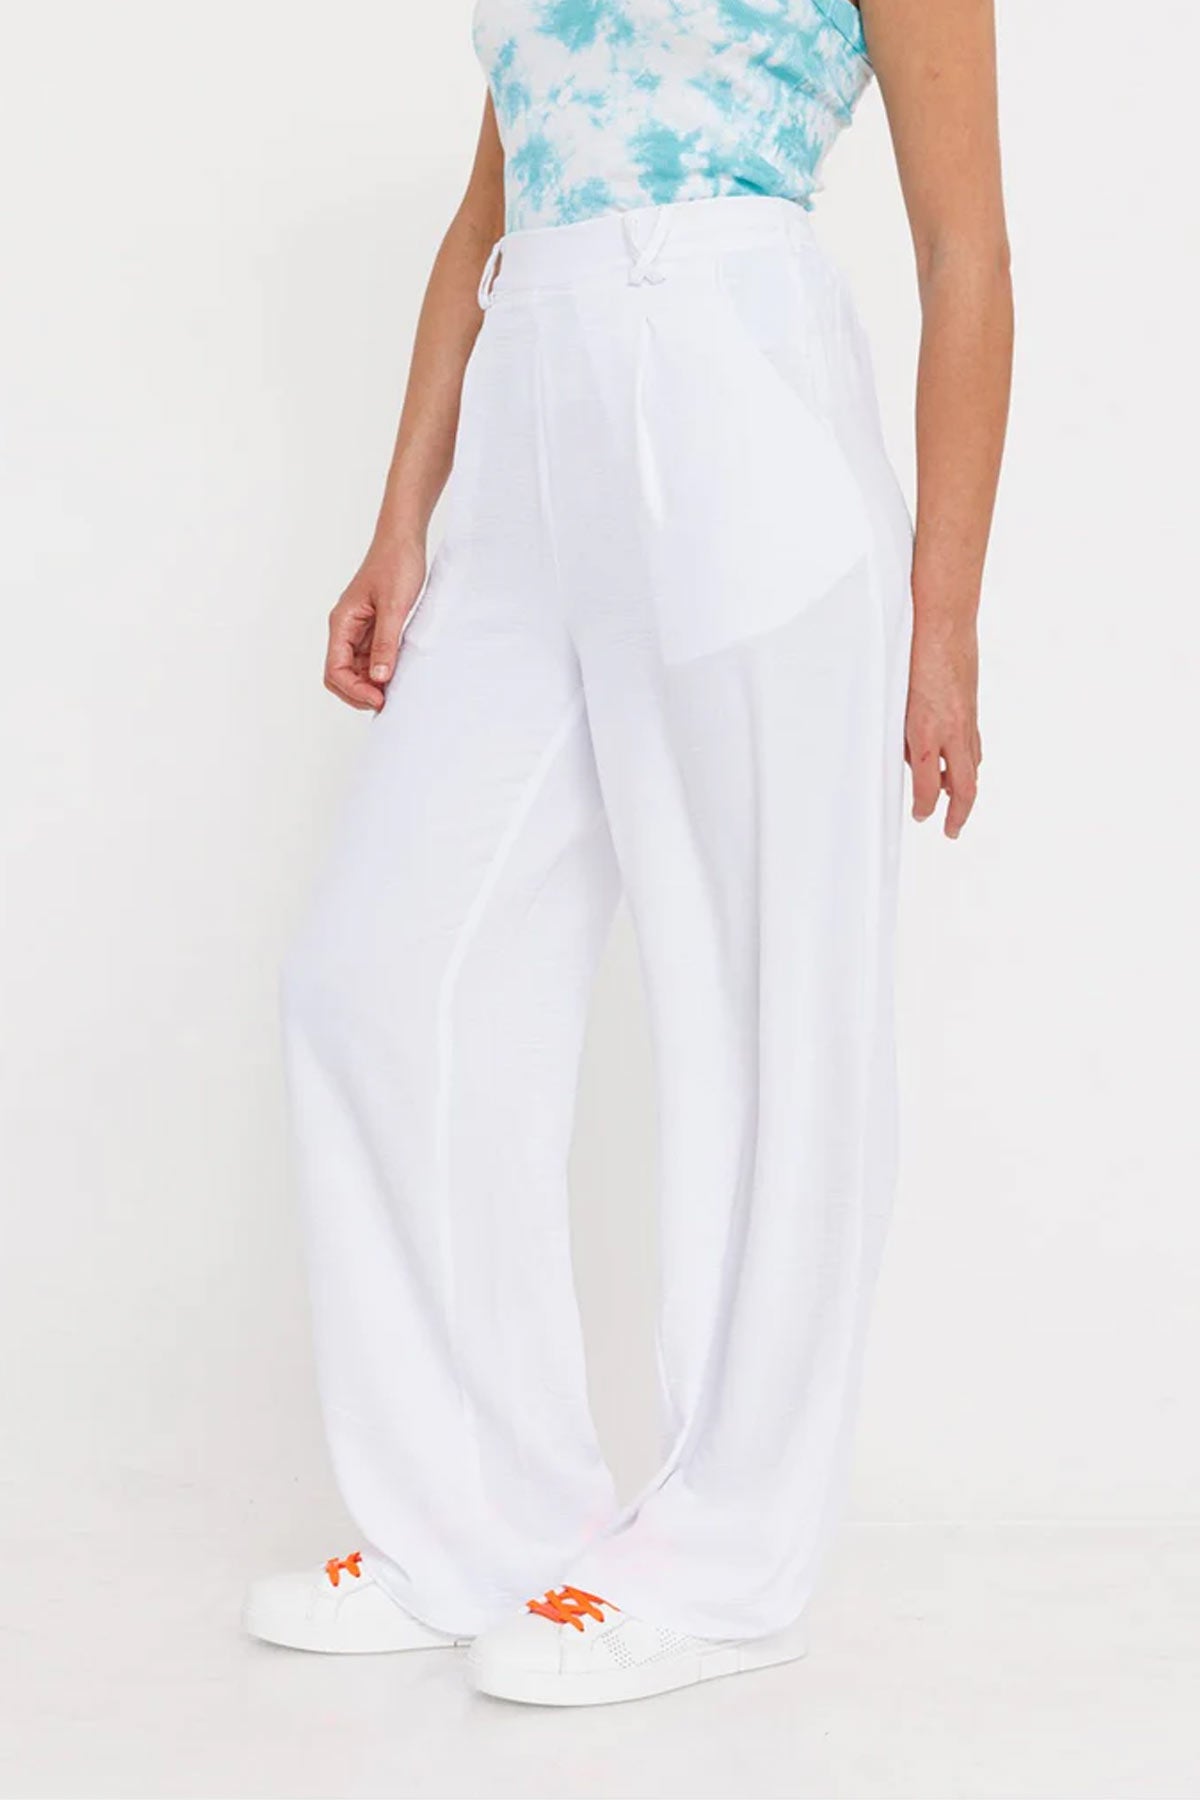 Replay מכנסי אלגנט ארוכים בצבע לבן לנשים